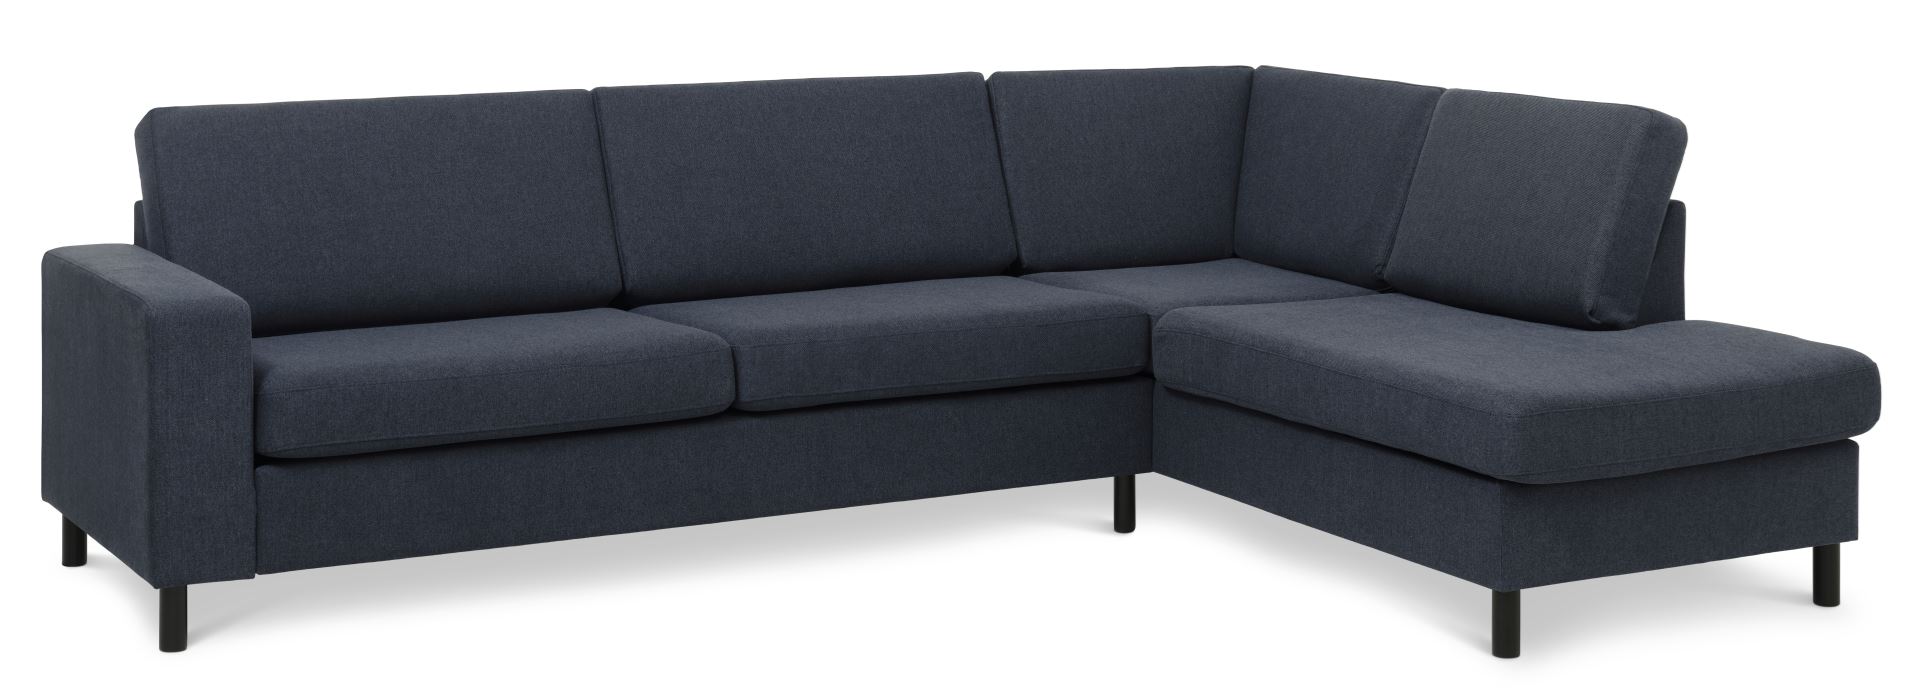 Pan set 3 OE right sofa med chaiselong - blå polyester stof og sort træ